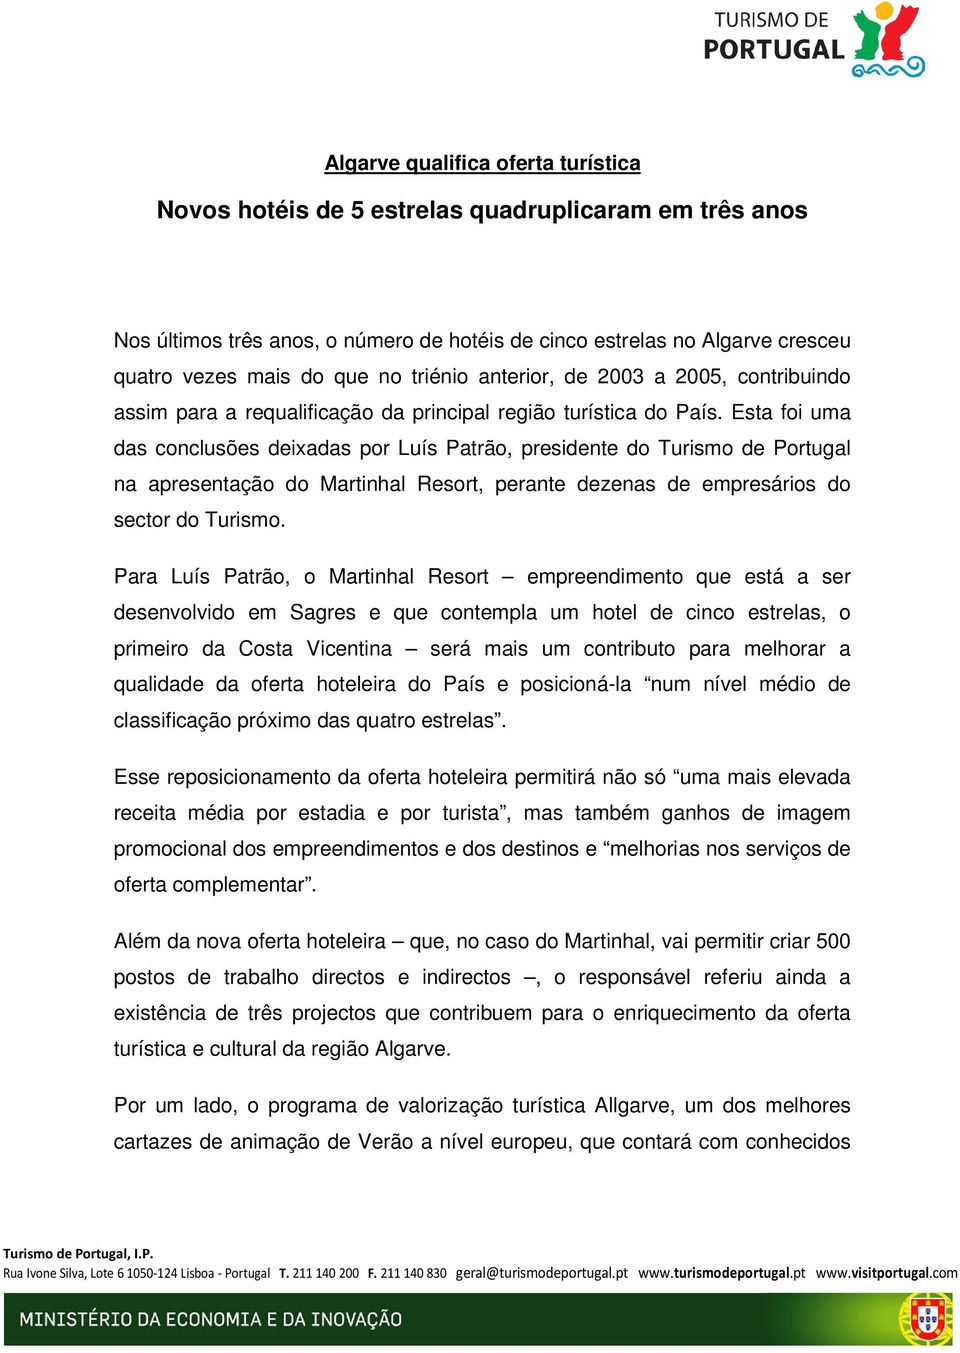 Esta foi uma das conclusões deixadas por Luís Patrão, presidente do Turismo de Portugal na apresentação do Martinhal Resort, perante dezenas de empresários do sector do Turismo.